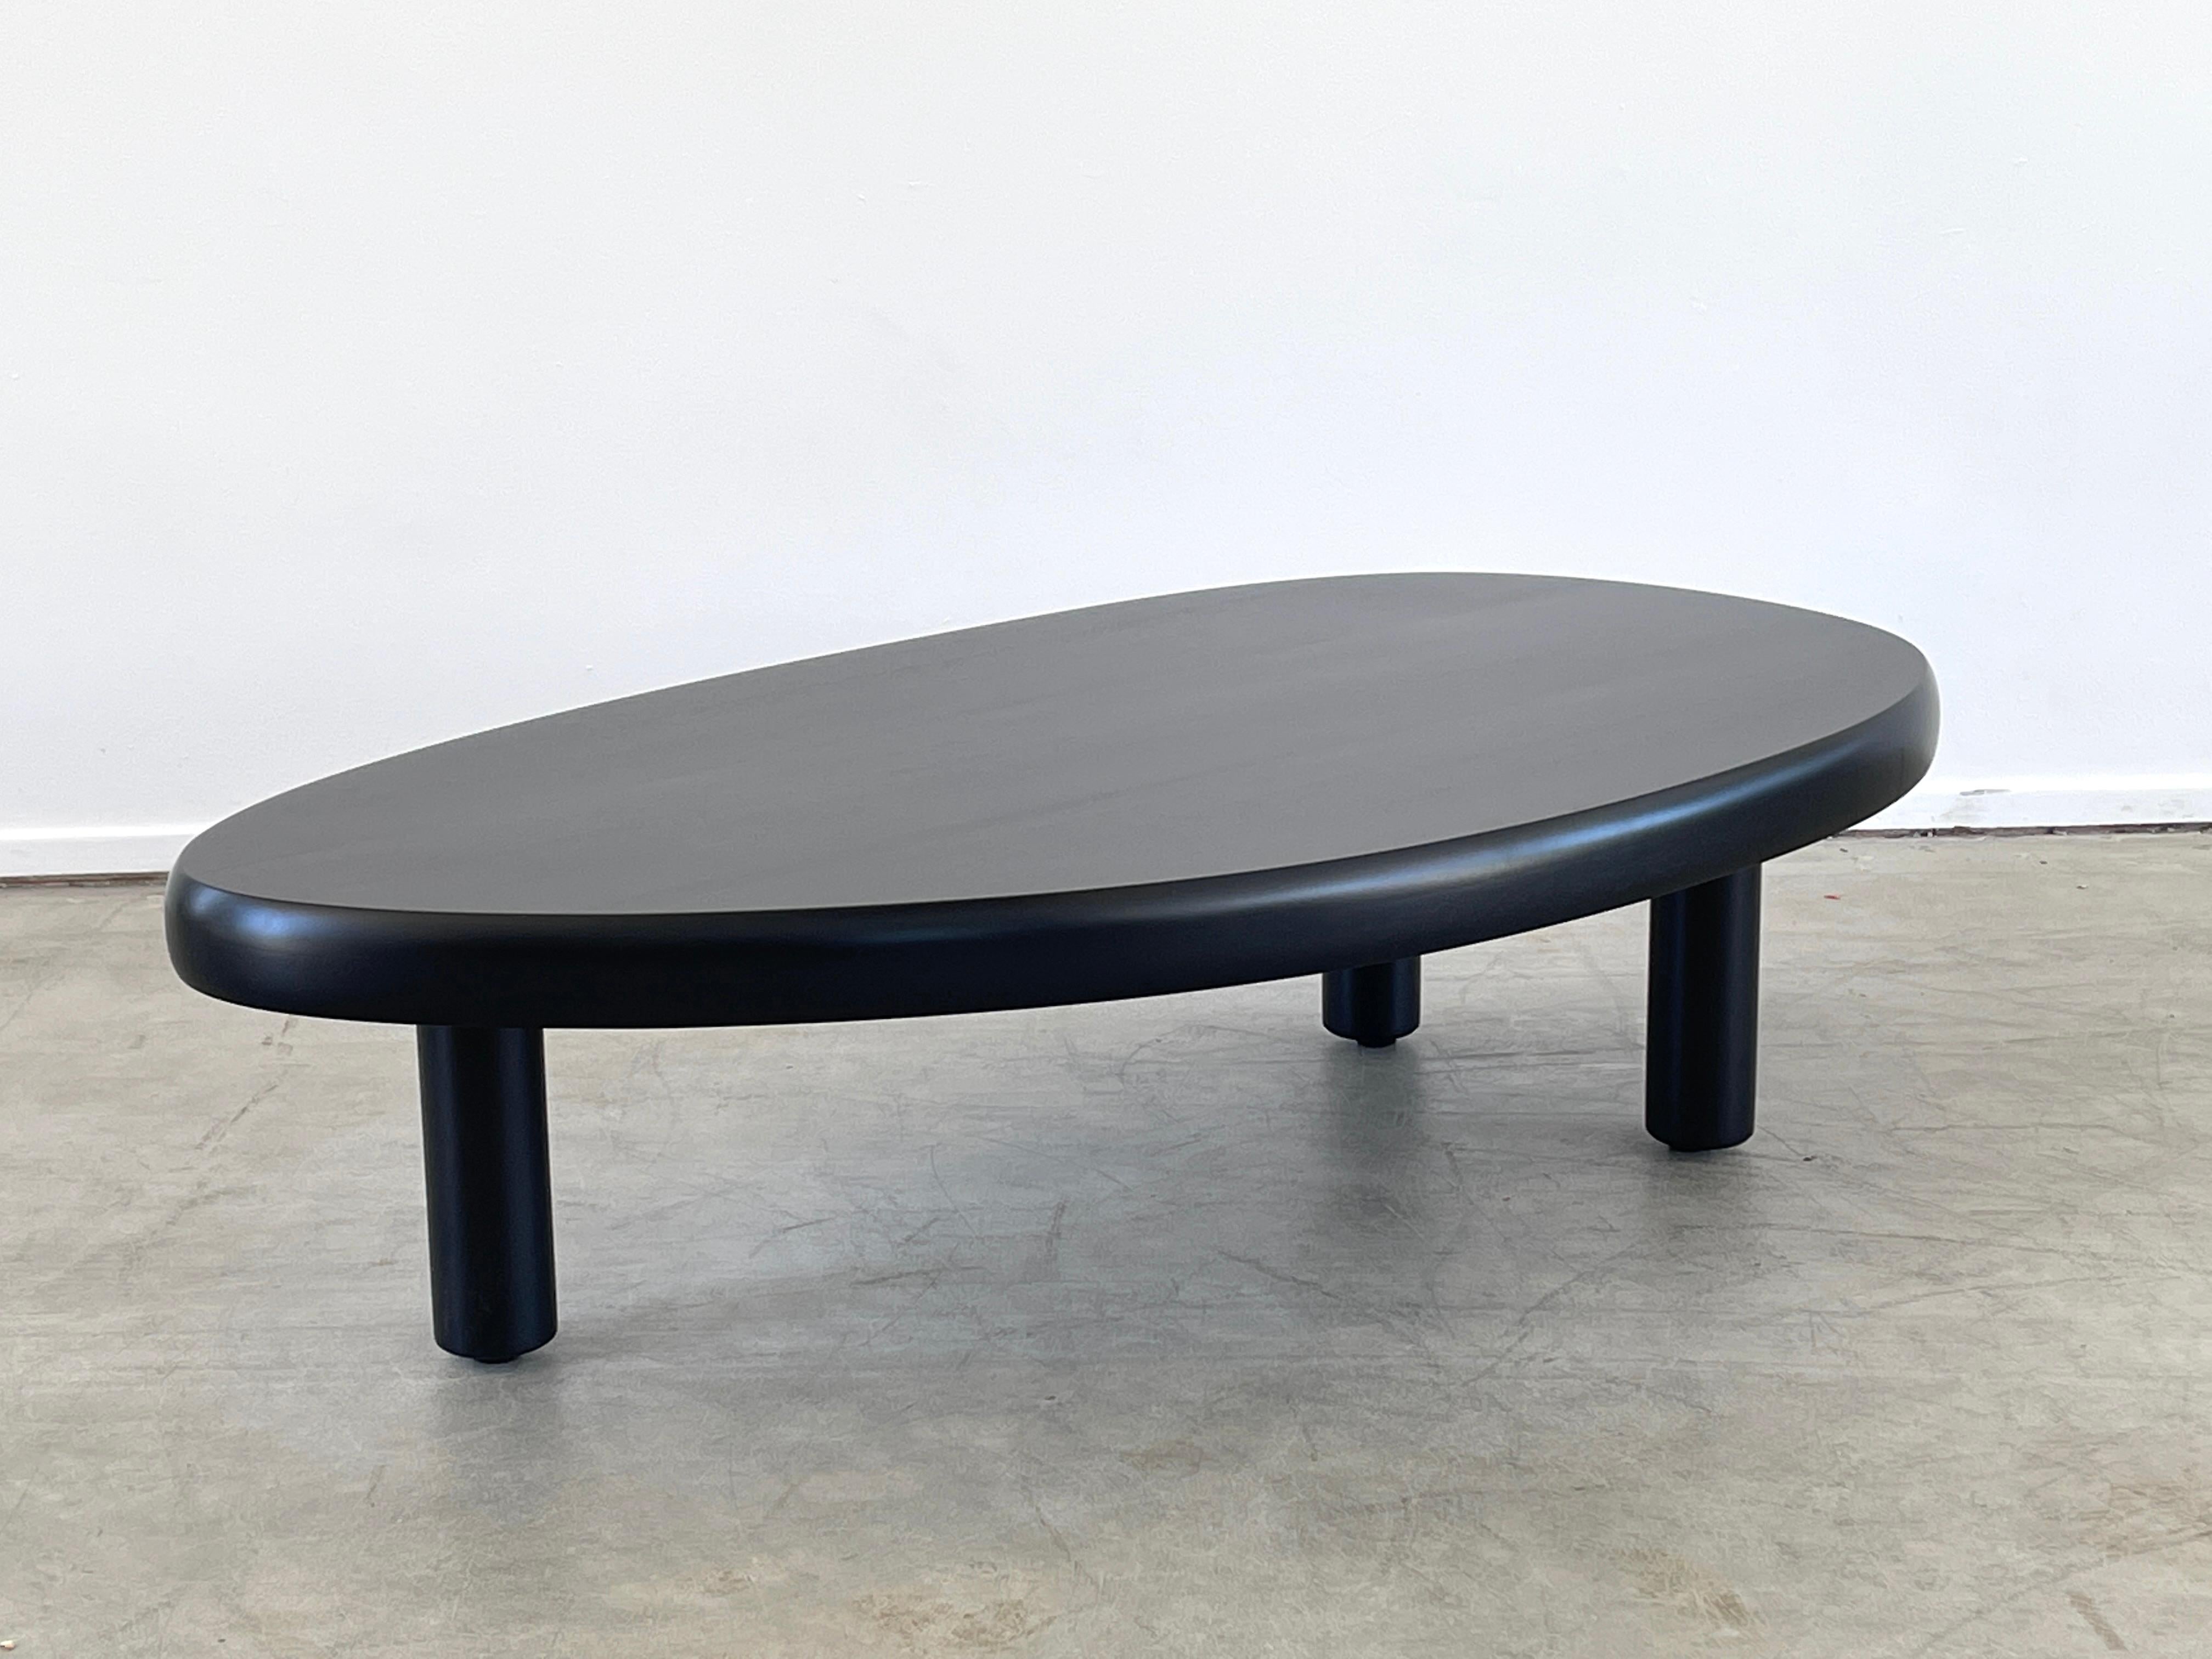 Magnifique table basse dans le style du design français des années 1950 avec 3 pieds et une forme organique libre.
Nouvellement produit par orange en bois d'acajou teinté ébène 
Un gain et une menuiserie en bois incroyables.
  